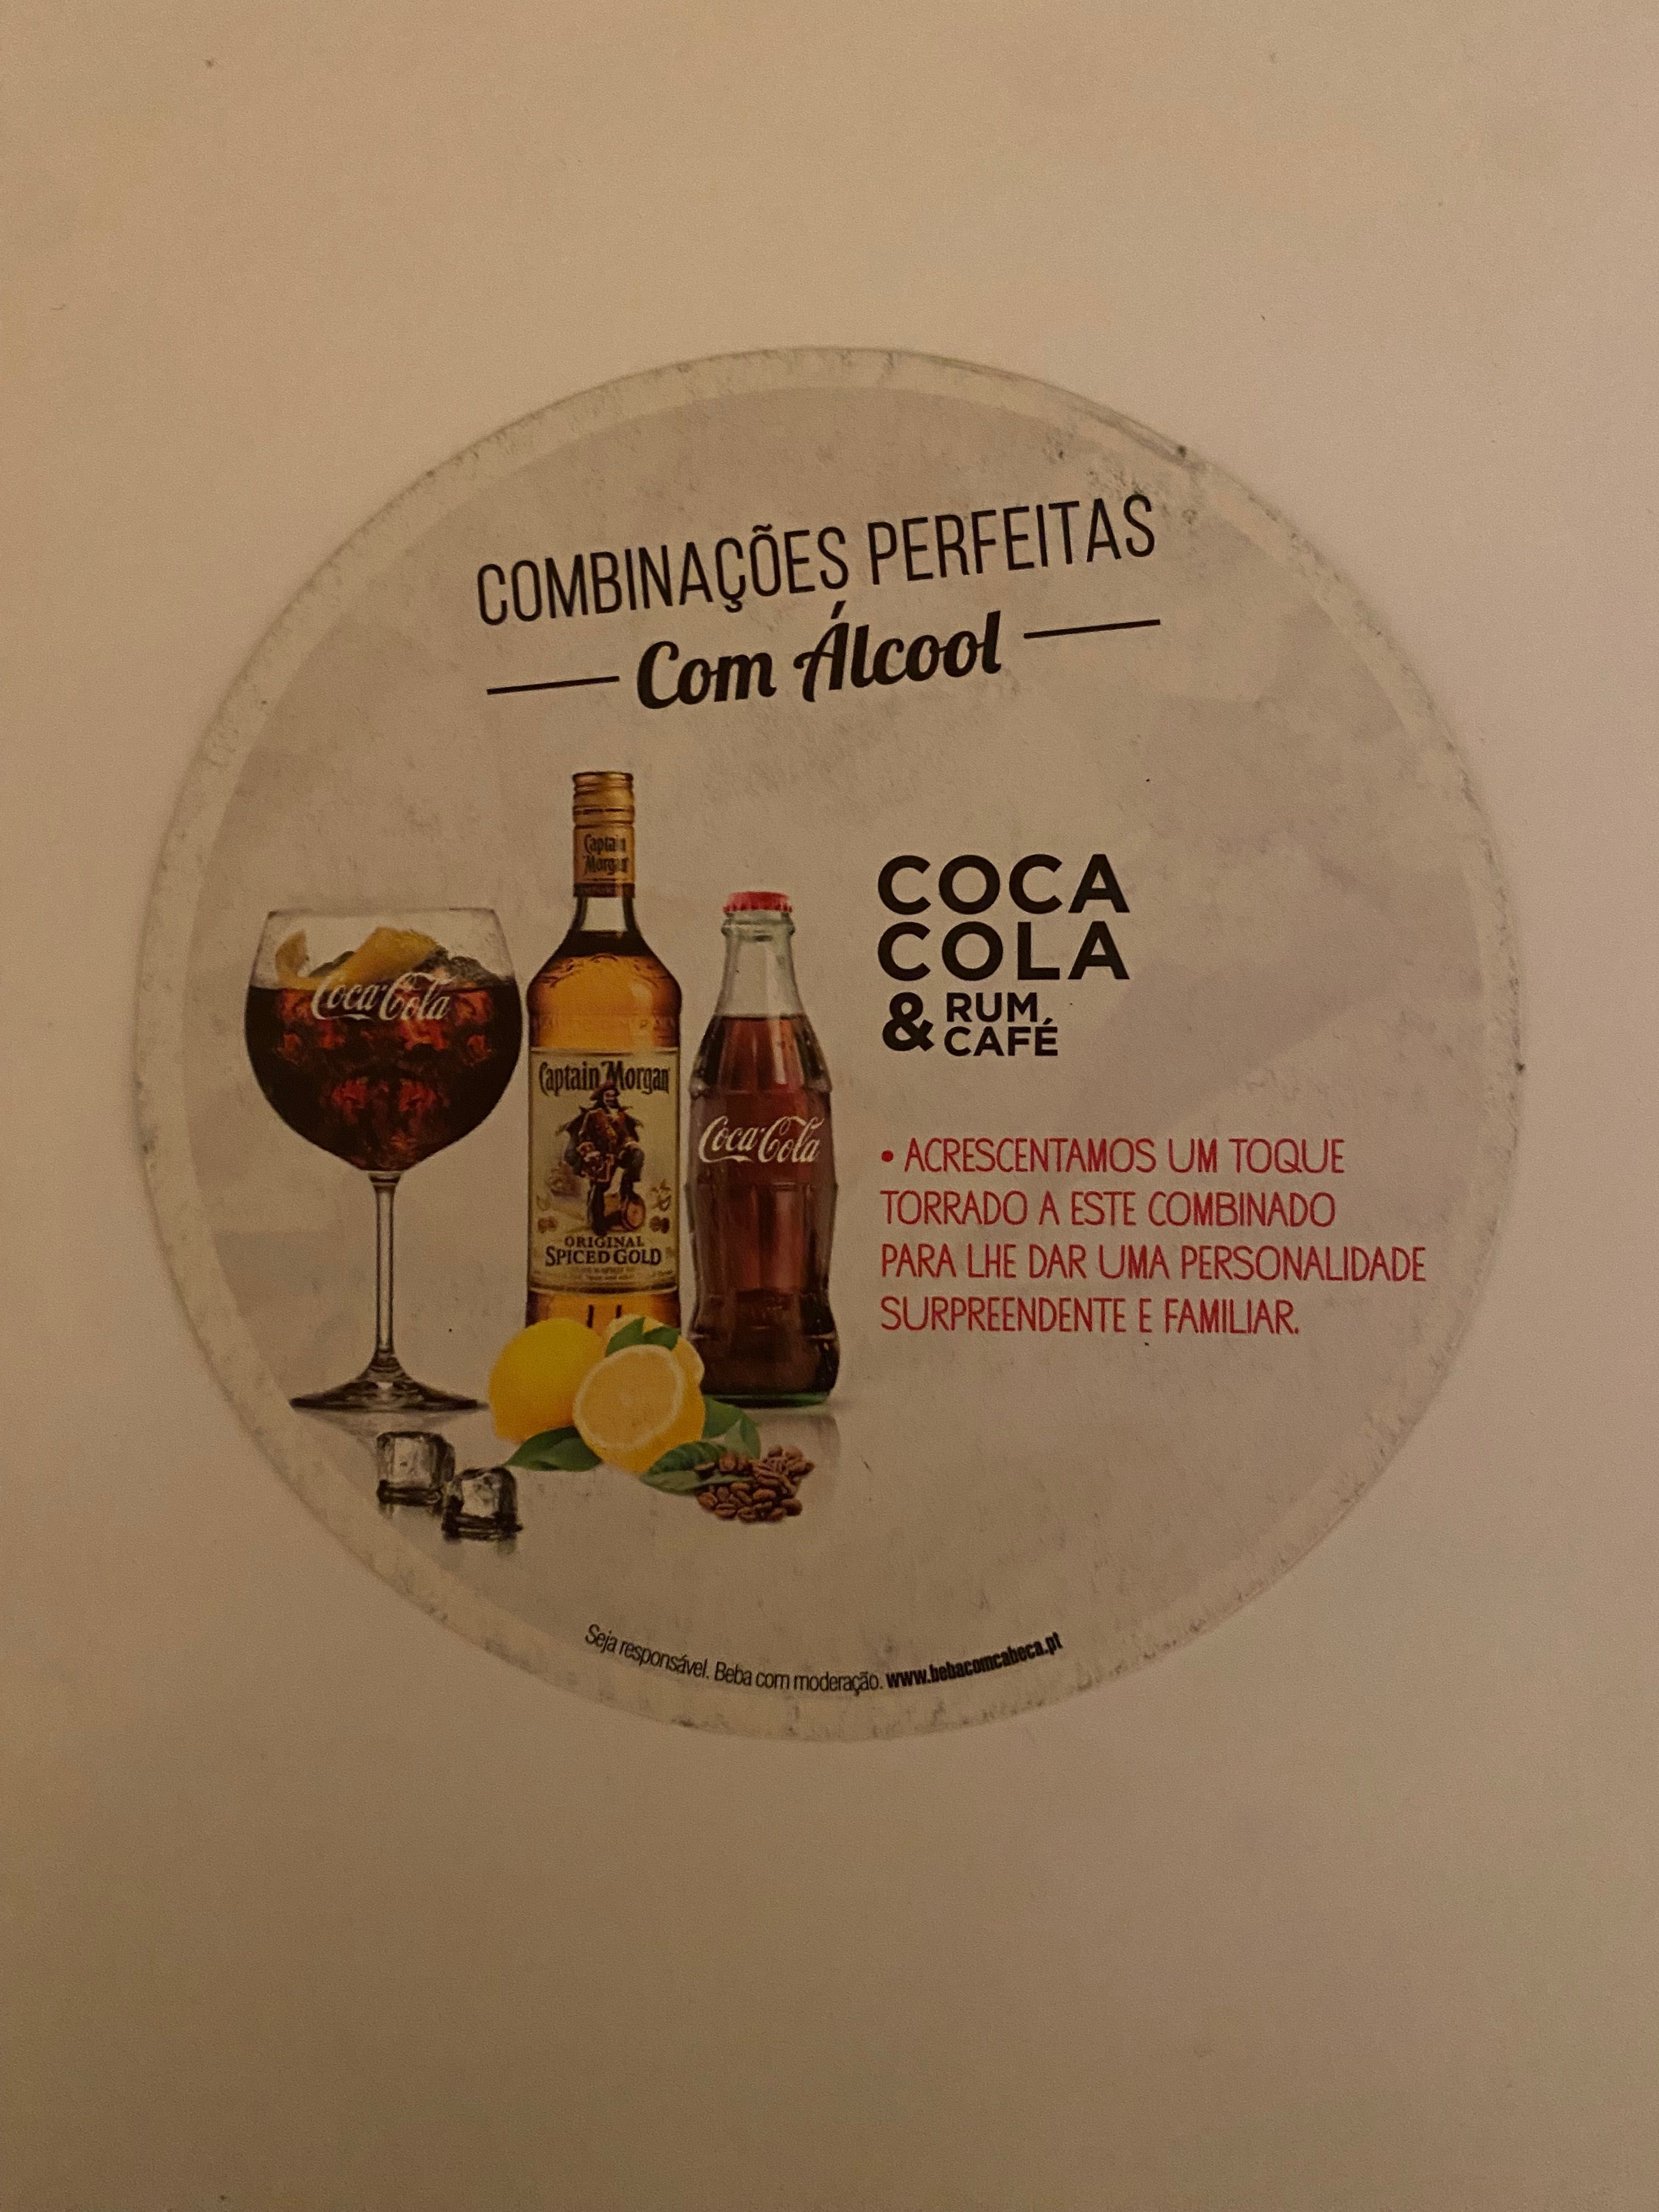 Bases para copos - Coca Cola - Combinações Perfeitas